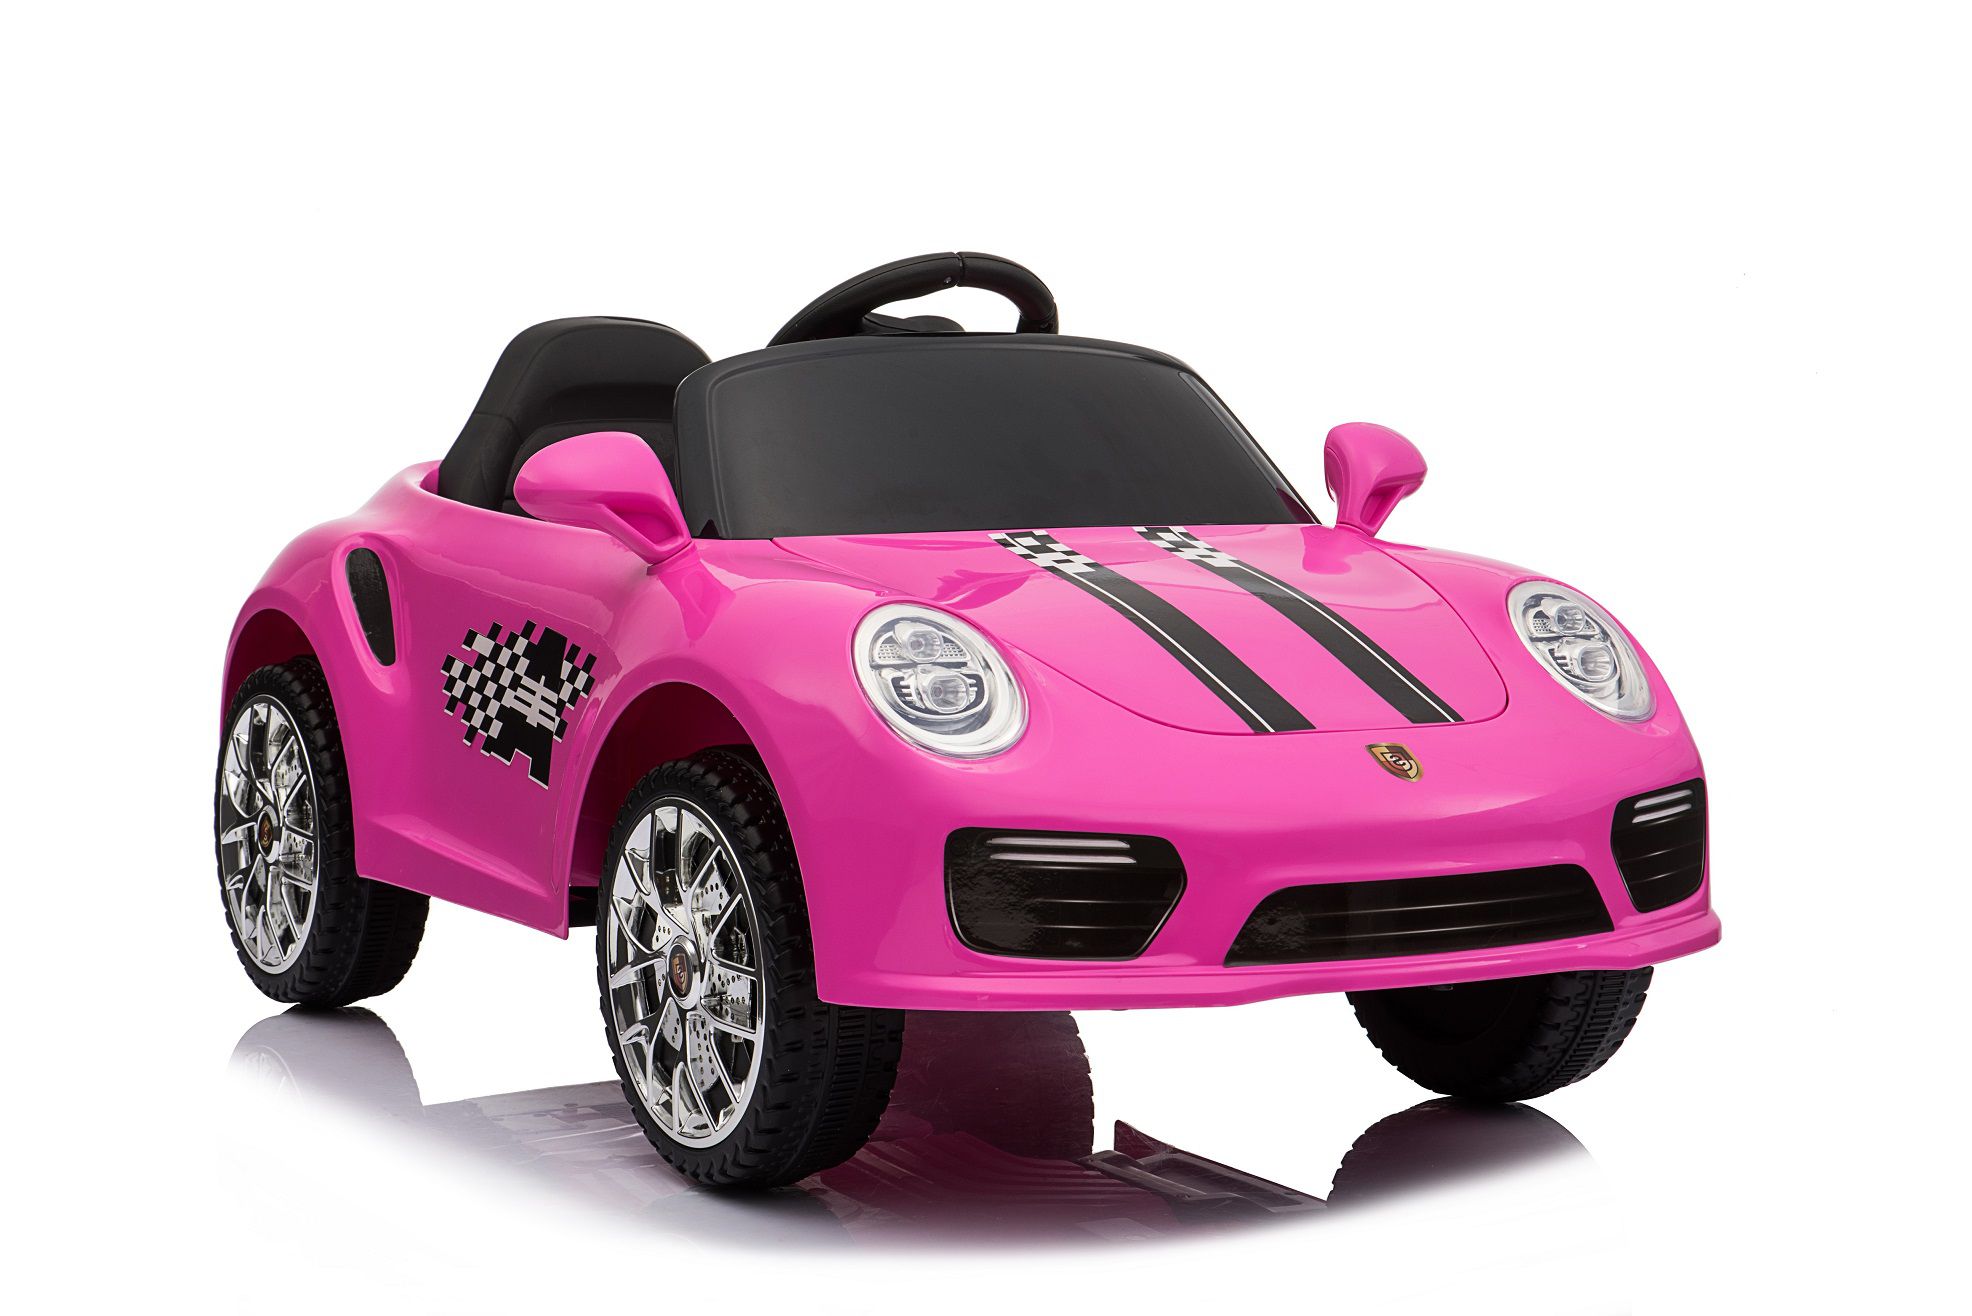 Mini Carro Elétrico Infantil de Luxo - Porsche c/ Controle Remoto - Glumi